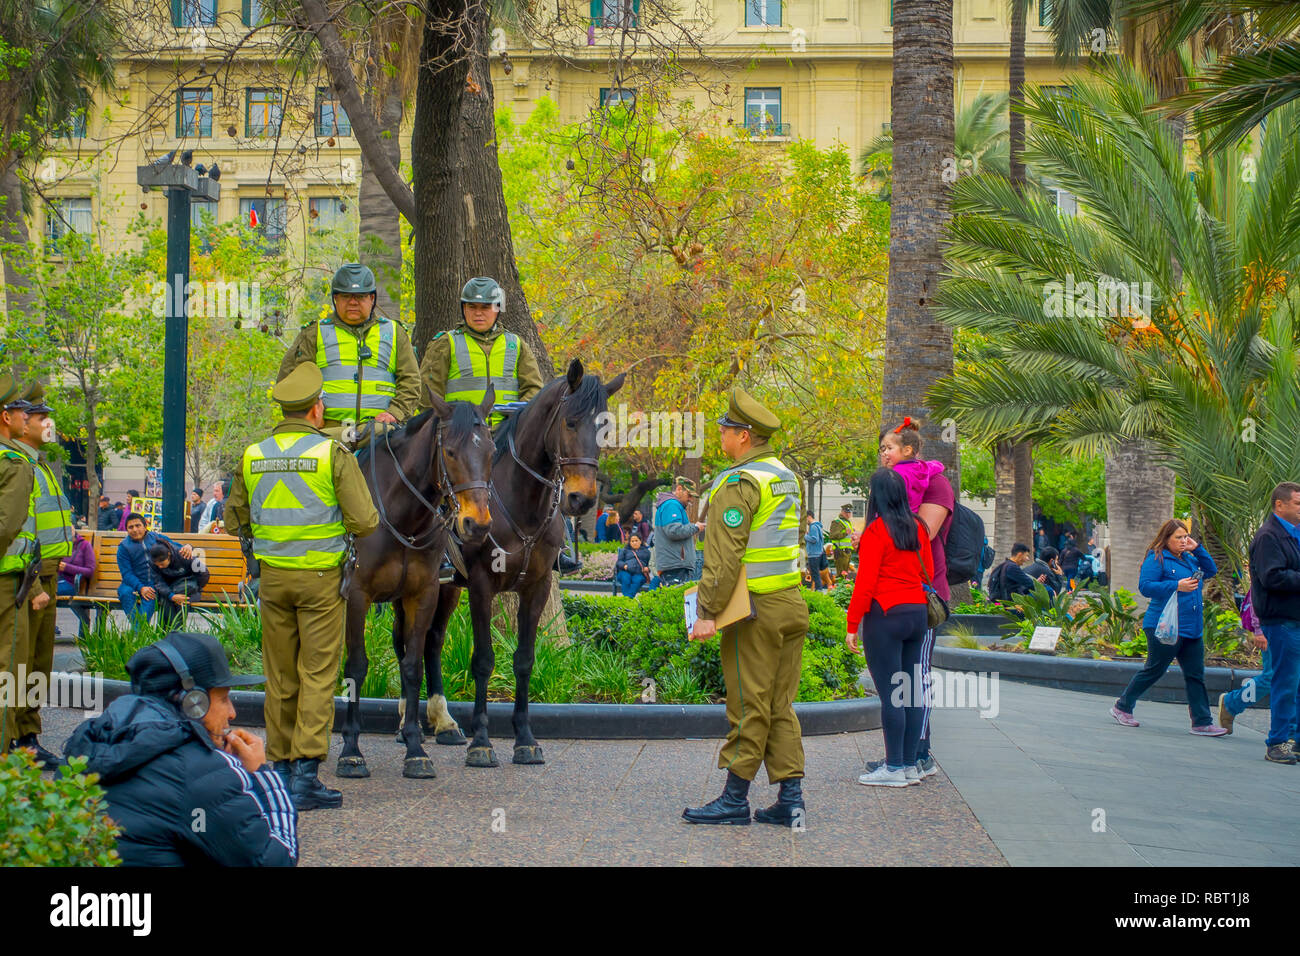 SANTIAGO, Cile - 13 settembre 2018: veduta esterna della polizia chiamato come carabineros a cavallo nel centro della città di Santiago del Cile Foto Stock